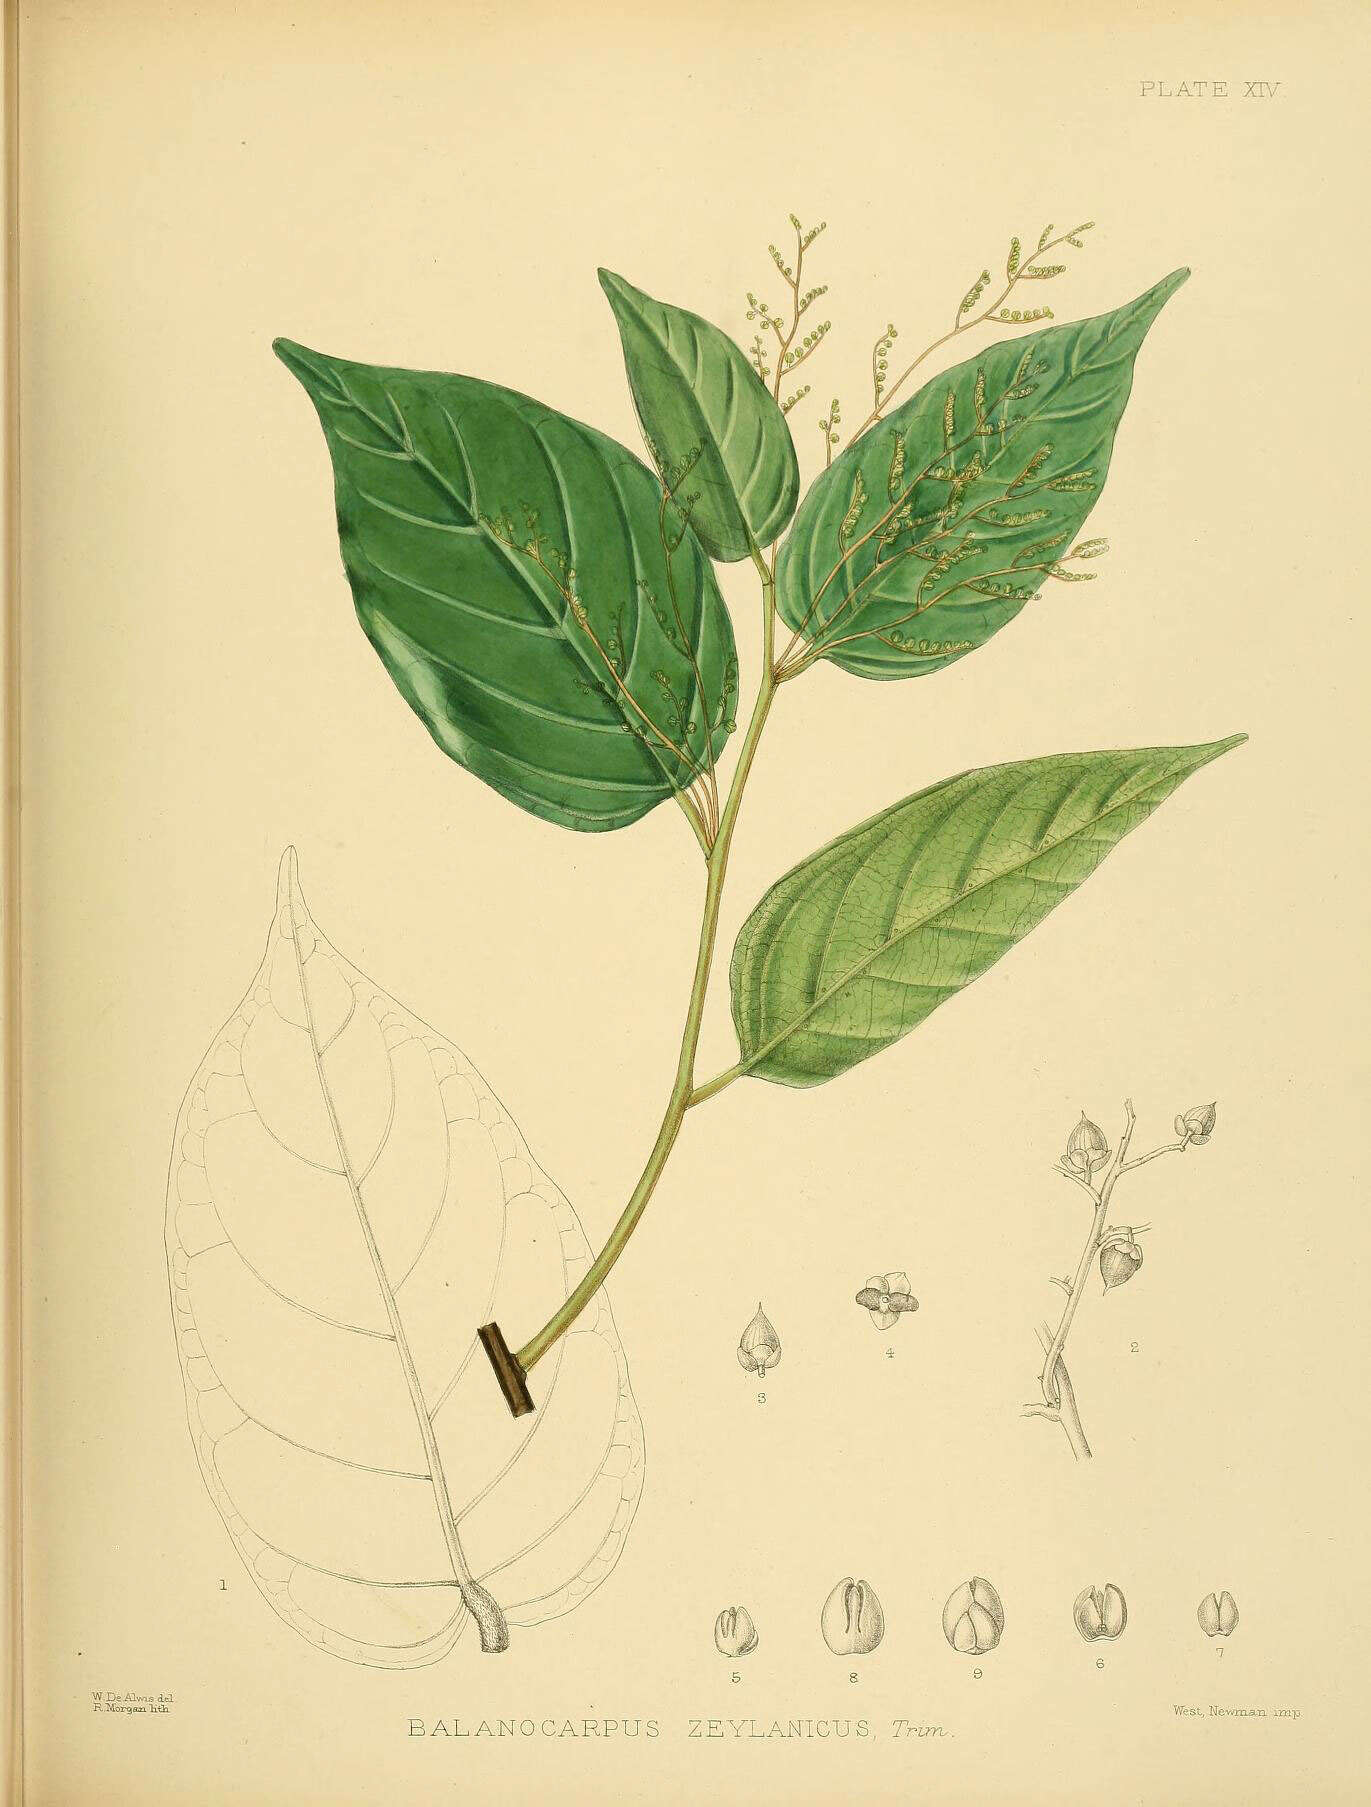 Image of Hopea brevipetiolaris (Thw.) P. S. Ashton